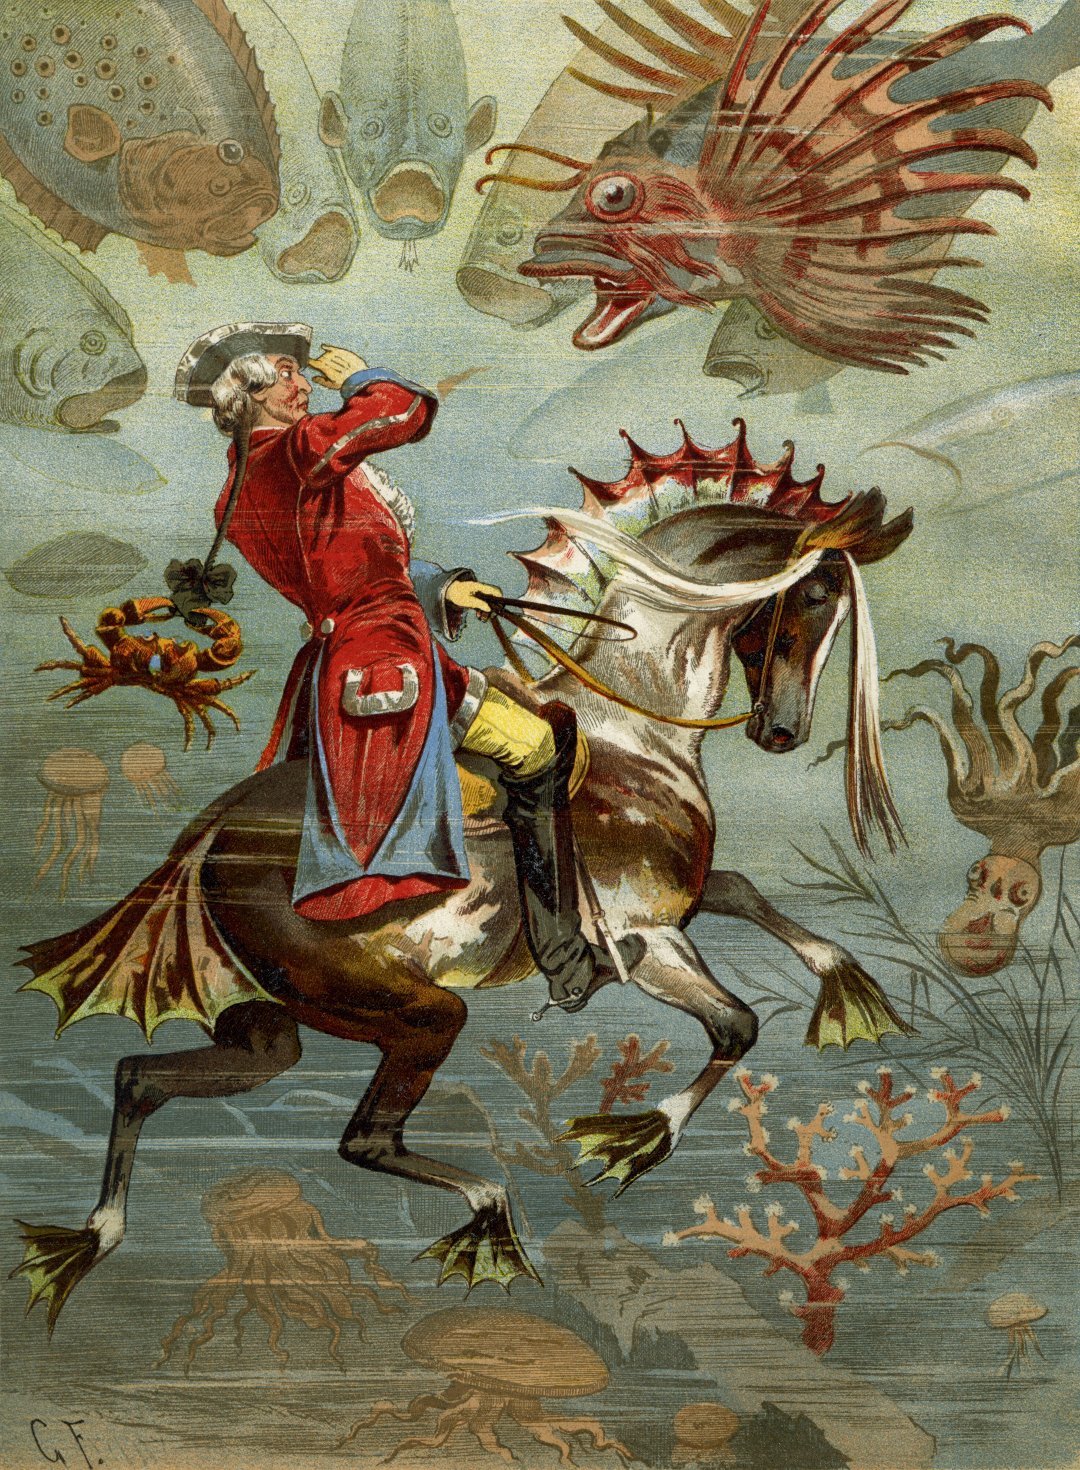 Иллюстрация с Мюнхгаузеном на коне под водой к книге Рудольфа Эриха Распе, созданная Готфридом Францем